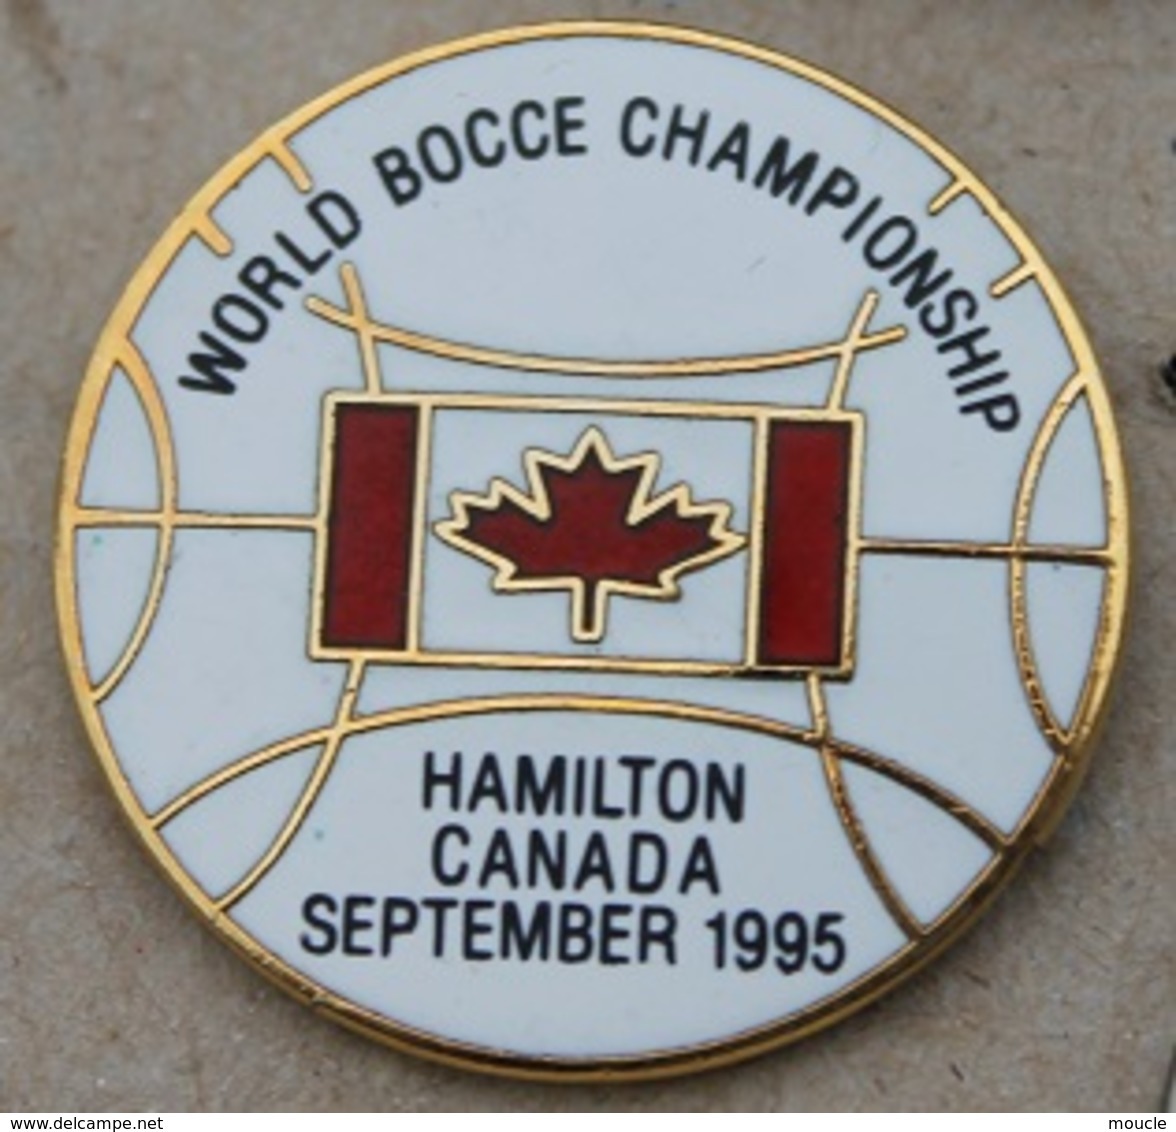 WORLD BOCCE CHAMPIONSHIP - HAMILTON CANADA SEPTEMBER 1995 - FEUILLE D'ERABLE - BOULE - PETANQUE -      (25) - Boule/Pétanque